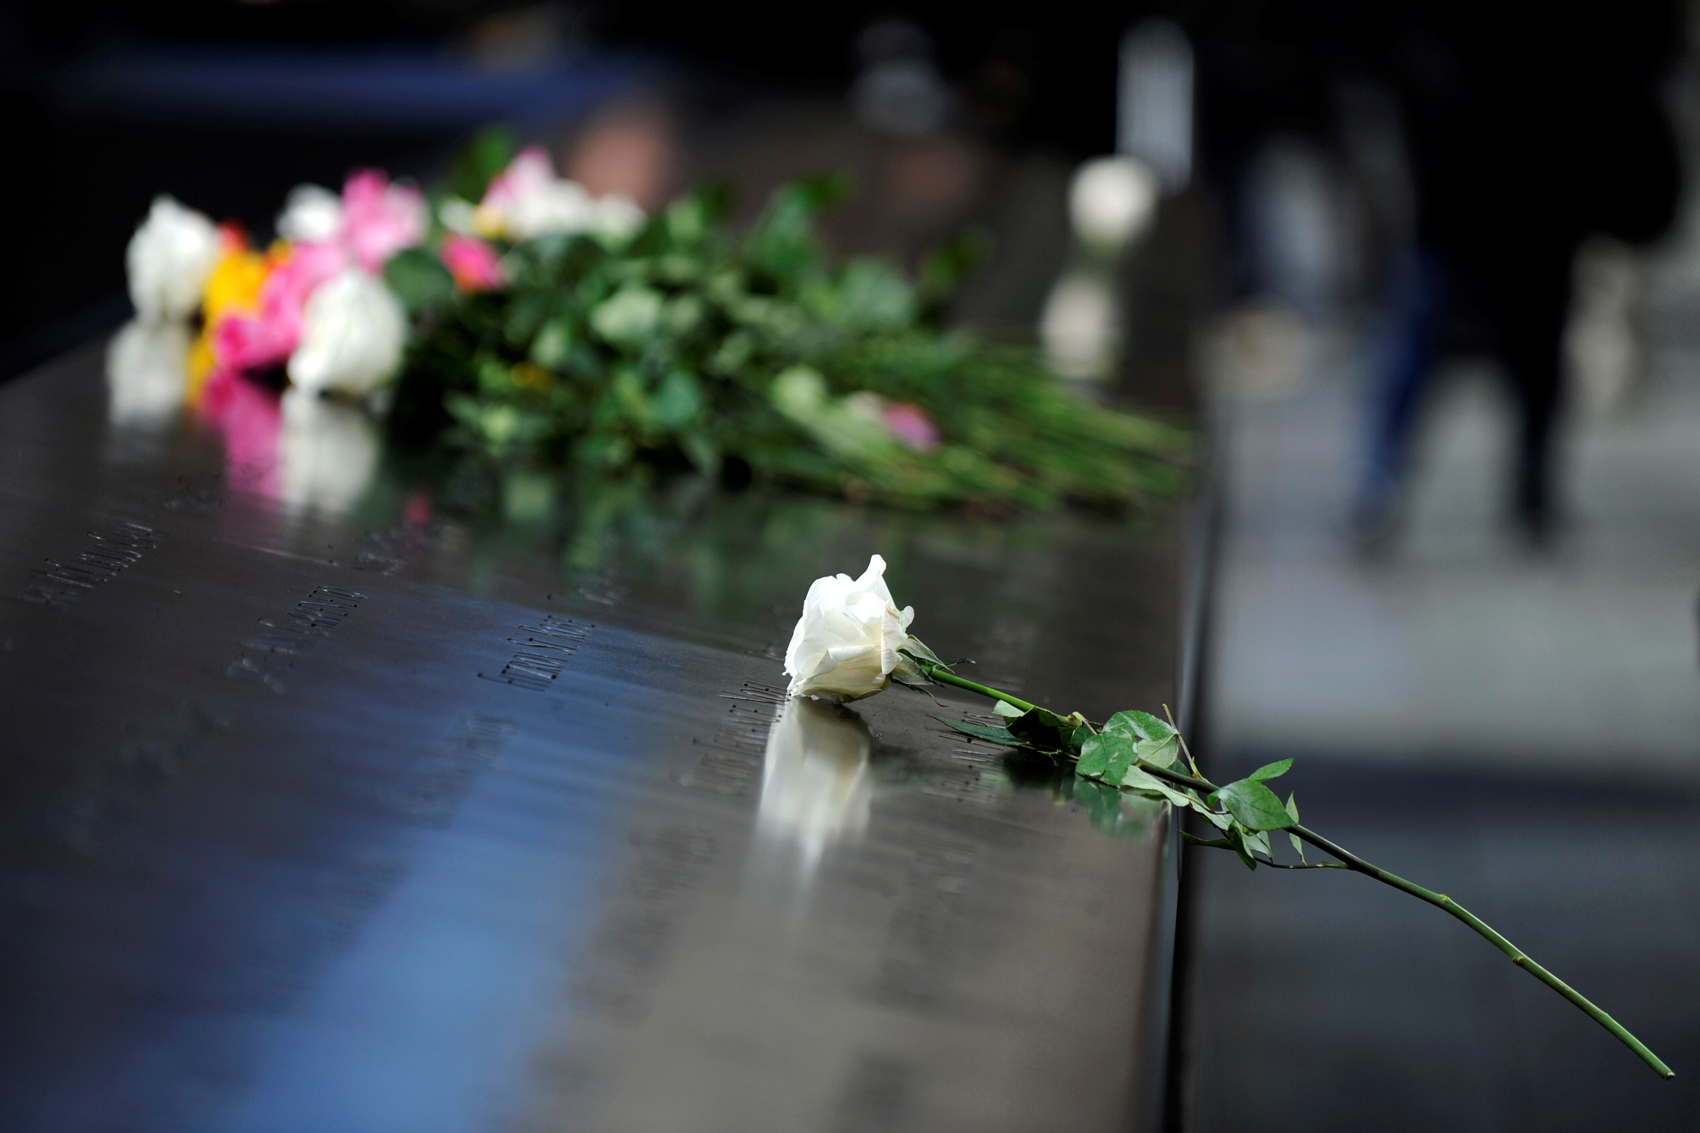 Diecisiete años después, más de 40% de las víctimas del 11-S siguen sin identificar